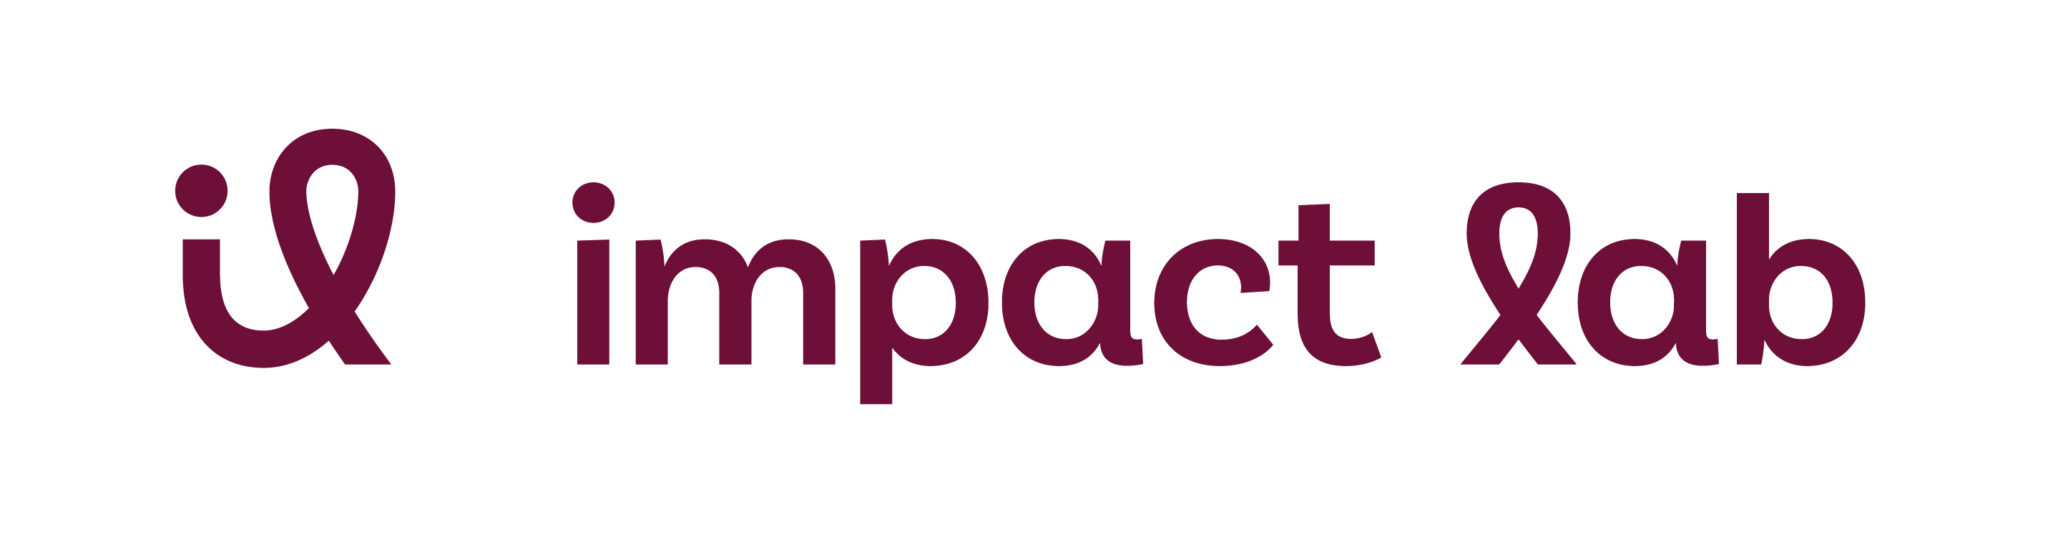 ImpactAS- Impact Lab logo